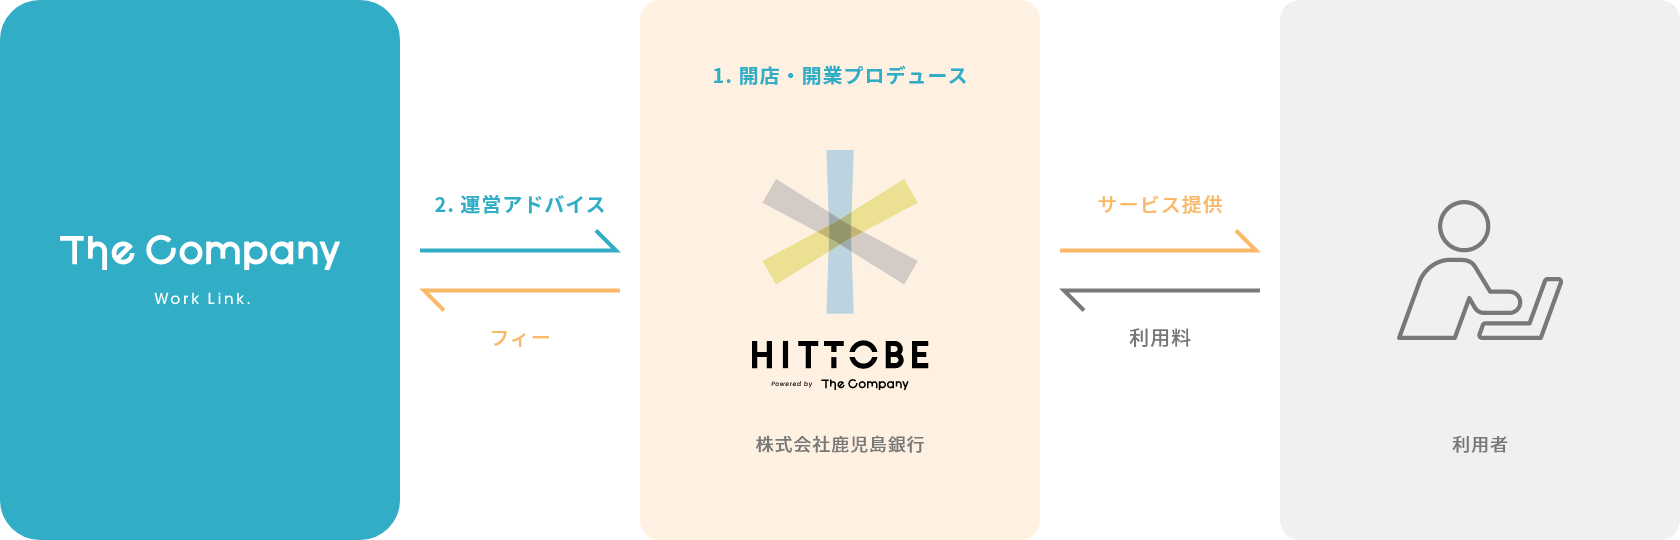 株式会社鹿児島銀行 様 コワーキングスペース「HITTOBE」フロー図